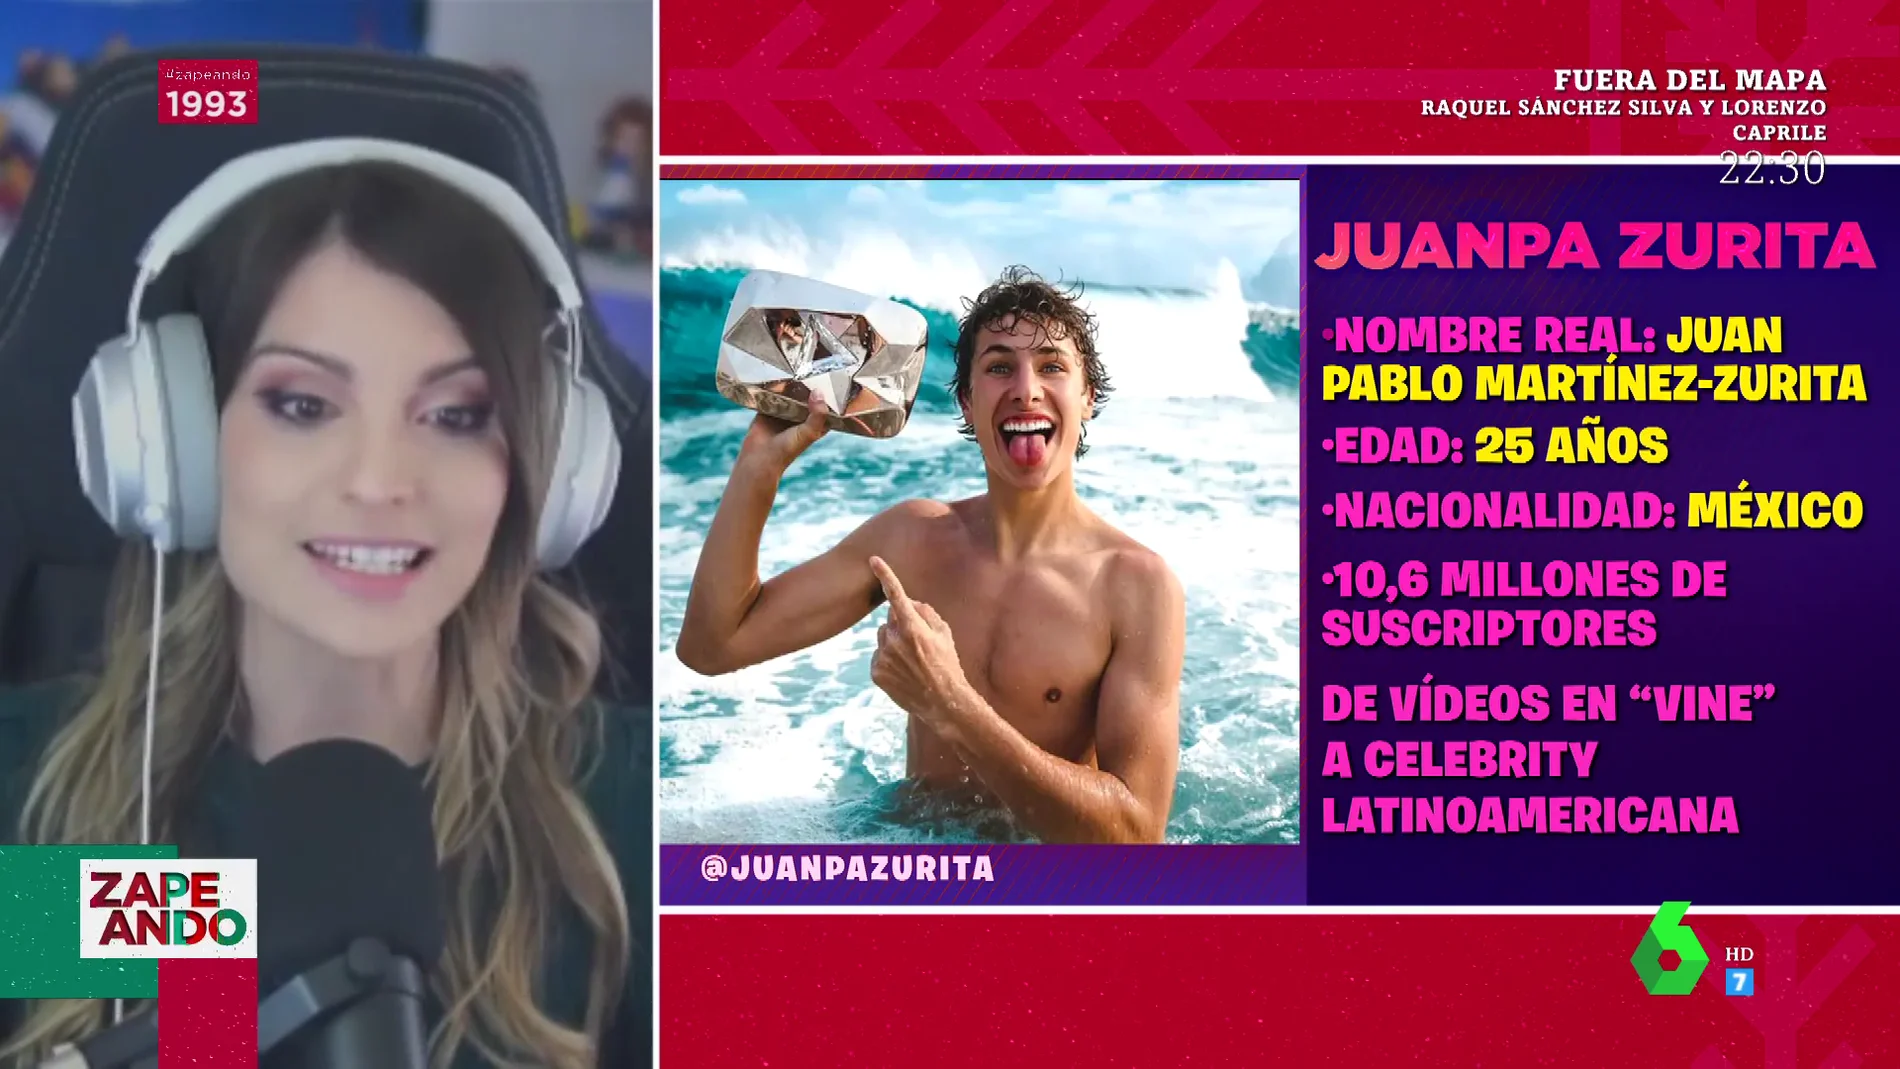 Cristinini analiza a Juanpa Zurita, el youtuber mexicano que arrasa en América: "Ha salido en series como 'Luis Miguel'"